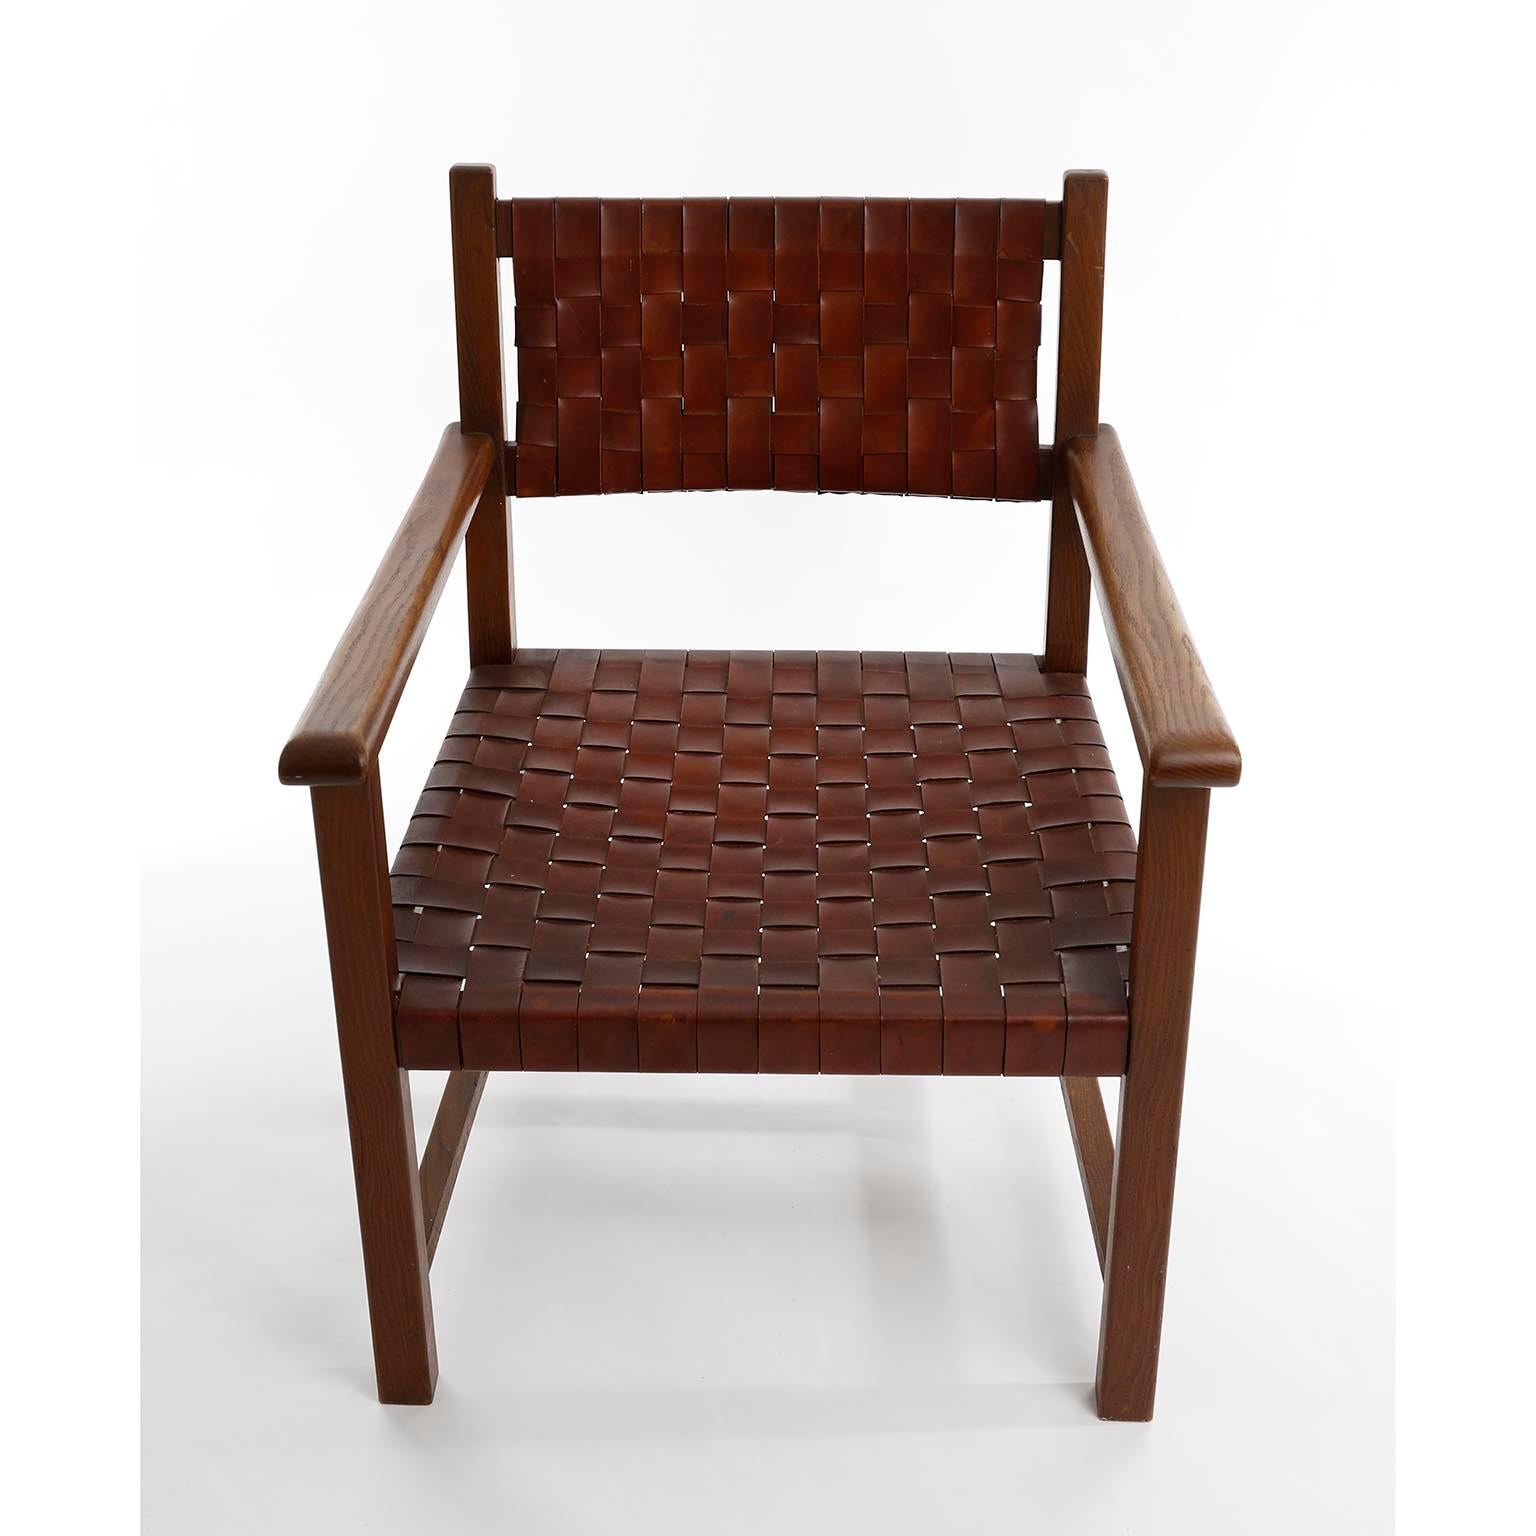 Ein wunderbarer Mid-Century Modern Sessel aus massiver Eiche, hergestellt in Europa in den 1960er Jahren.
Schöne Maserung des Eichenholzes und dicke geflochtene oder gewebte patinierte Lederriemen an Rückenlehne und Sitz in warmem cognacbraunem